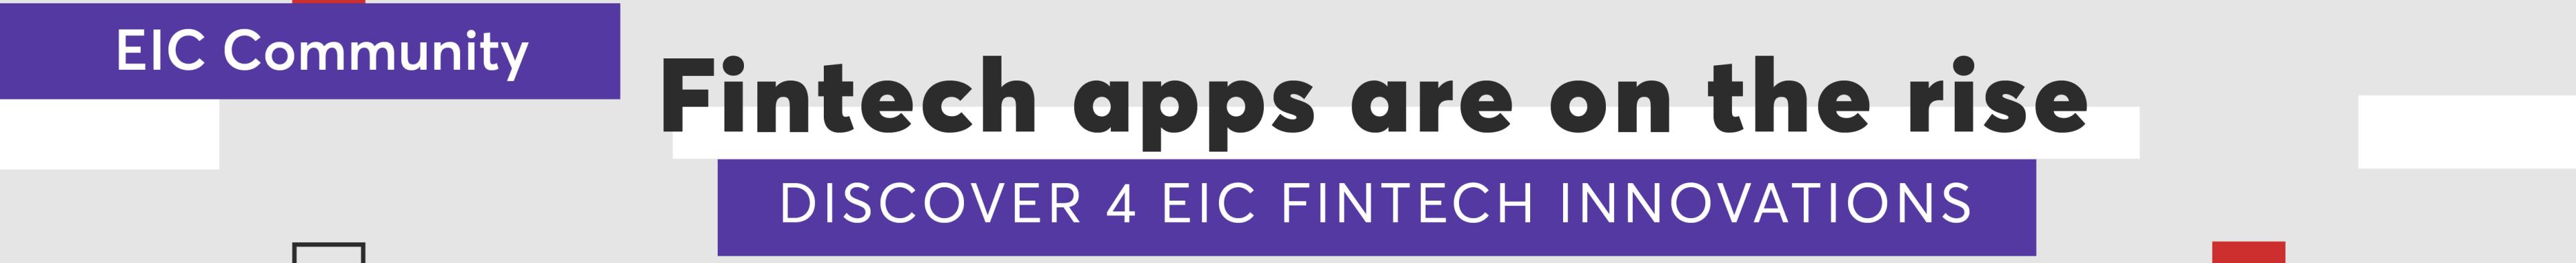 eic_bas_stories_fintech_apps_community_banner.jpg